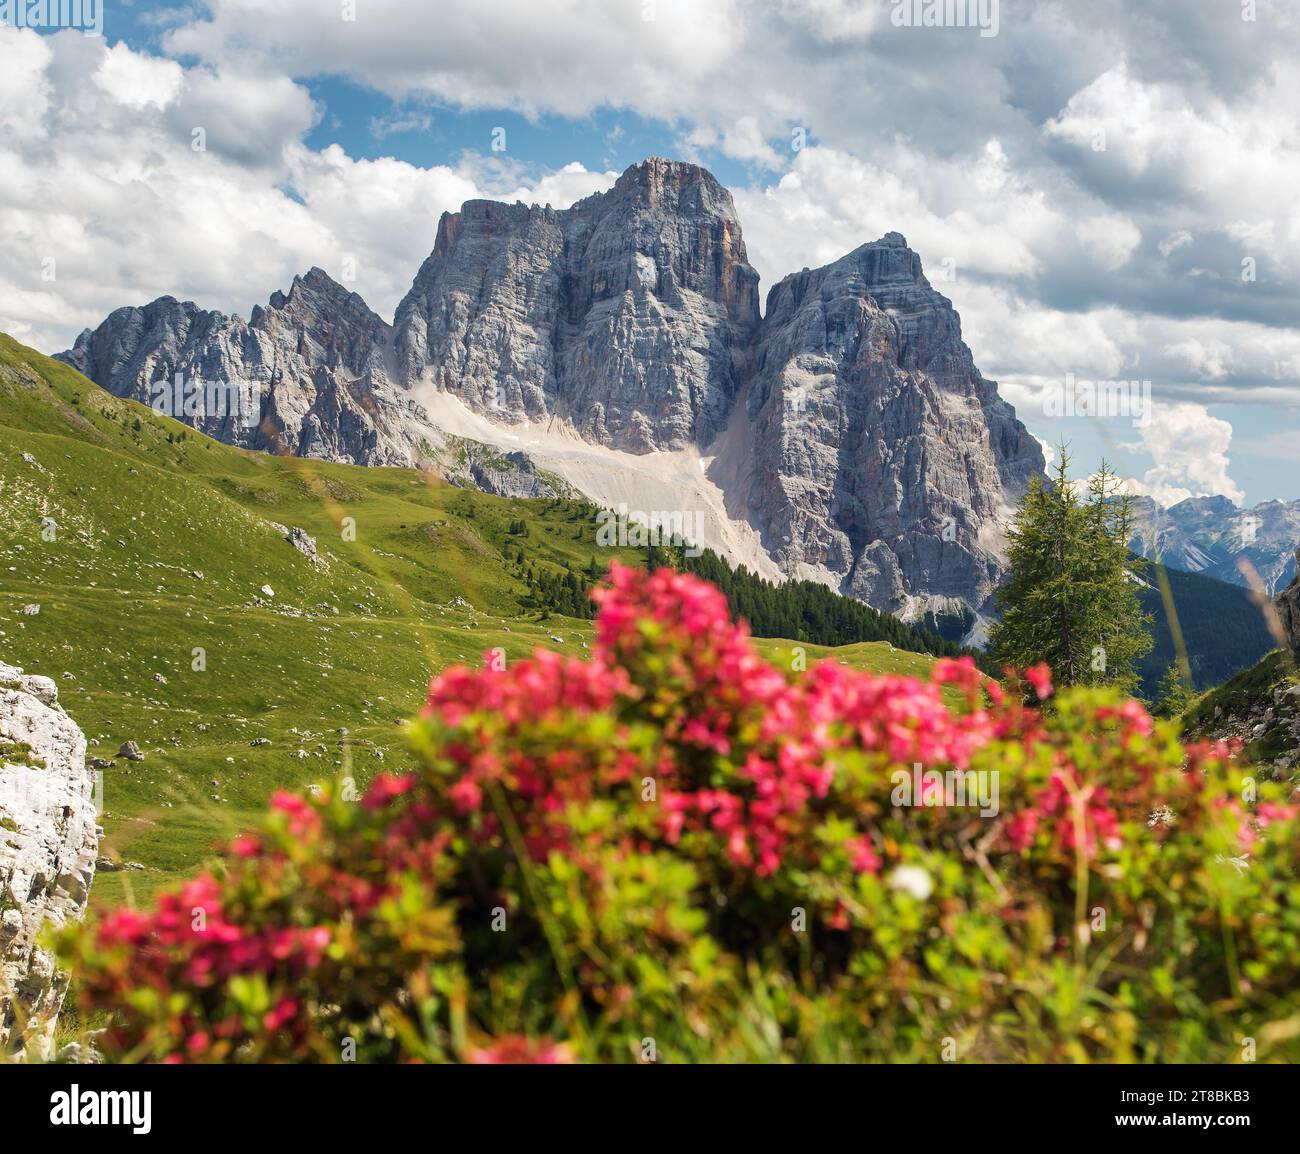 Mount Pelmo, view of Monte Pelmo red mountain flowers, South Tyrol, Alps Dolomites mountains, Italy Europe Stock Photo